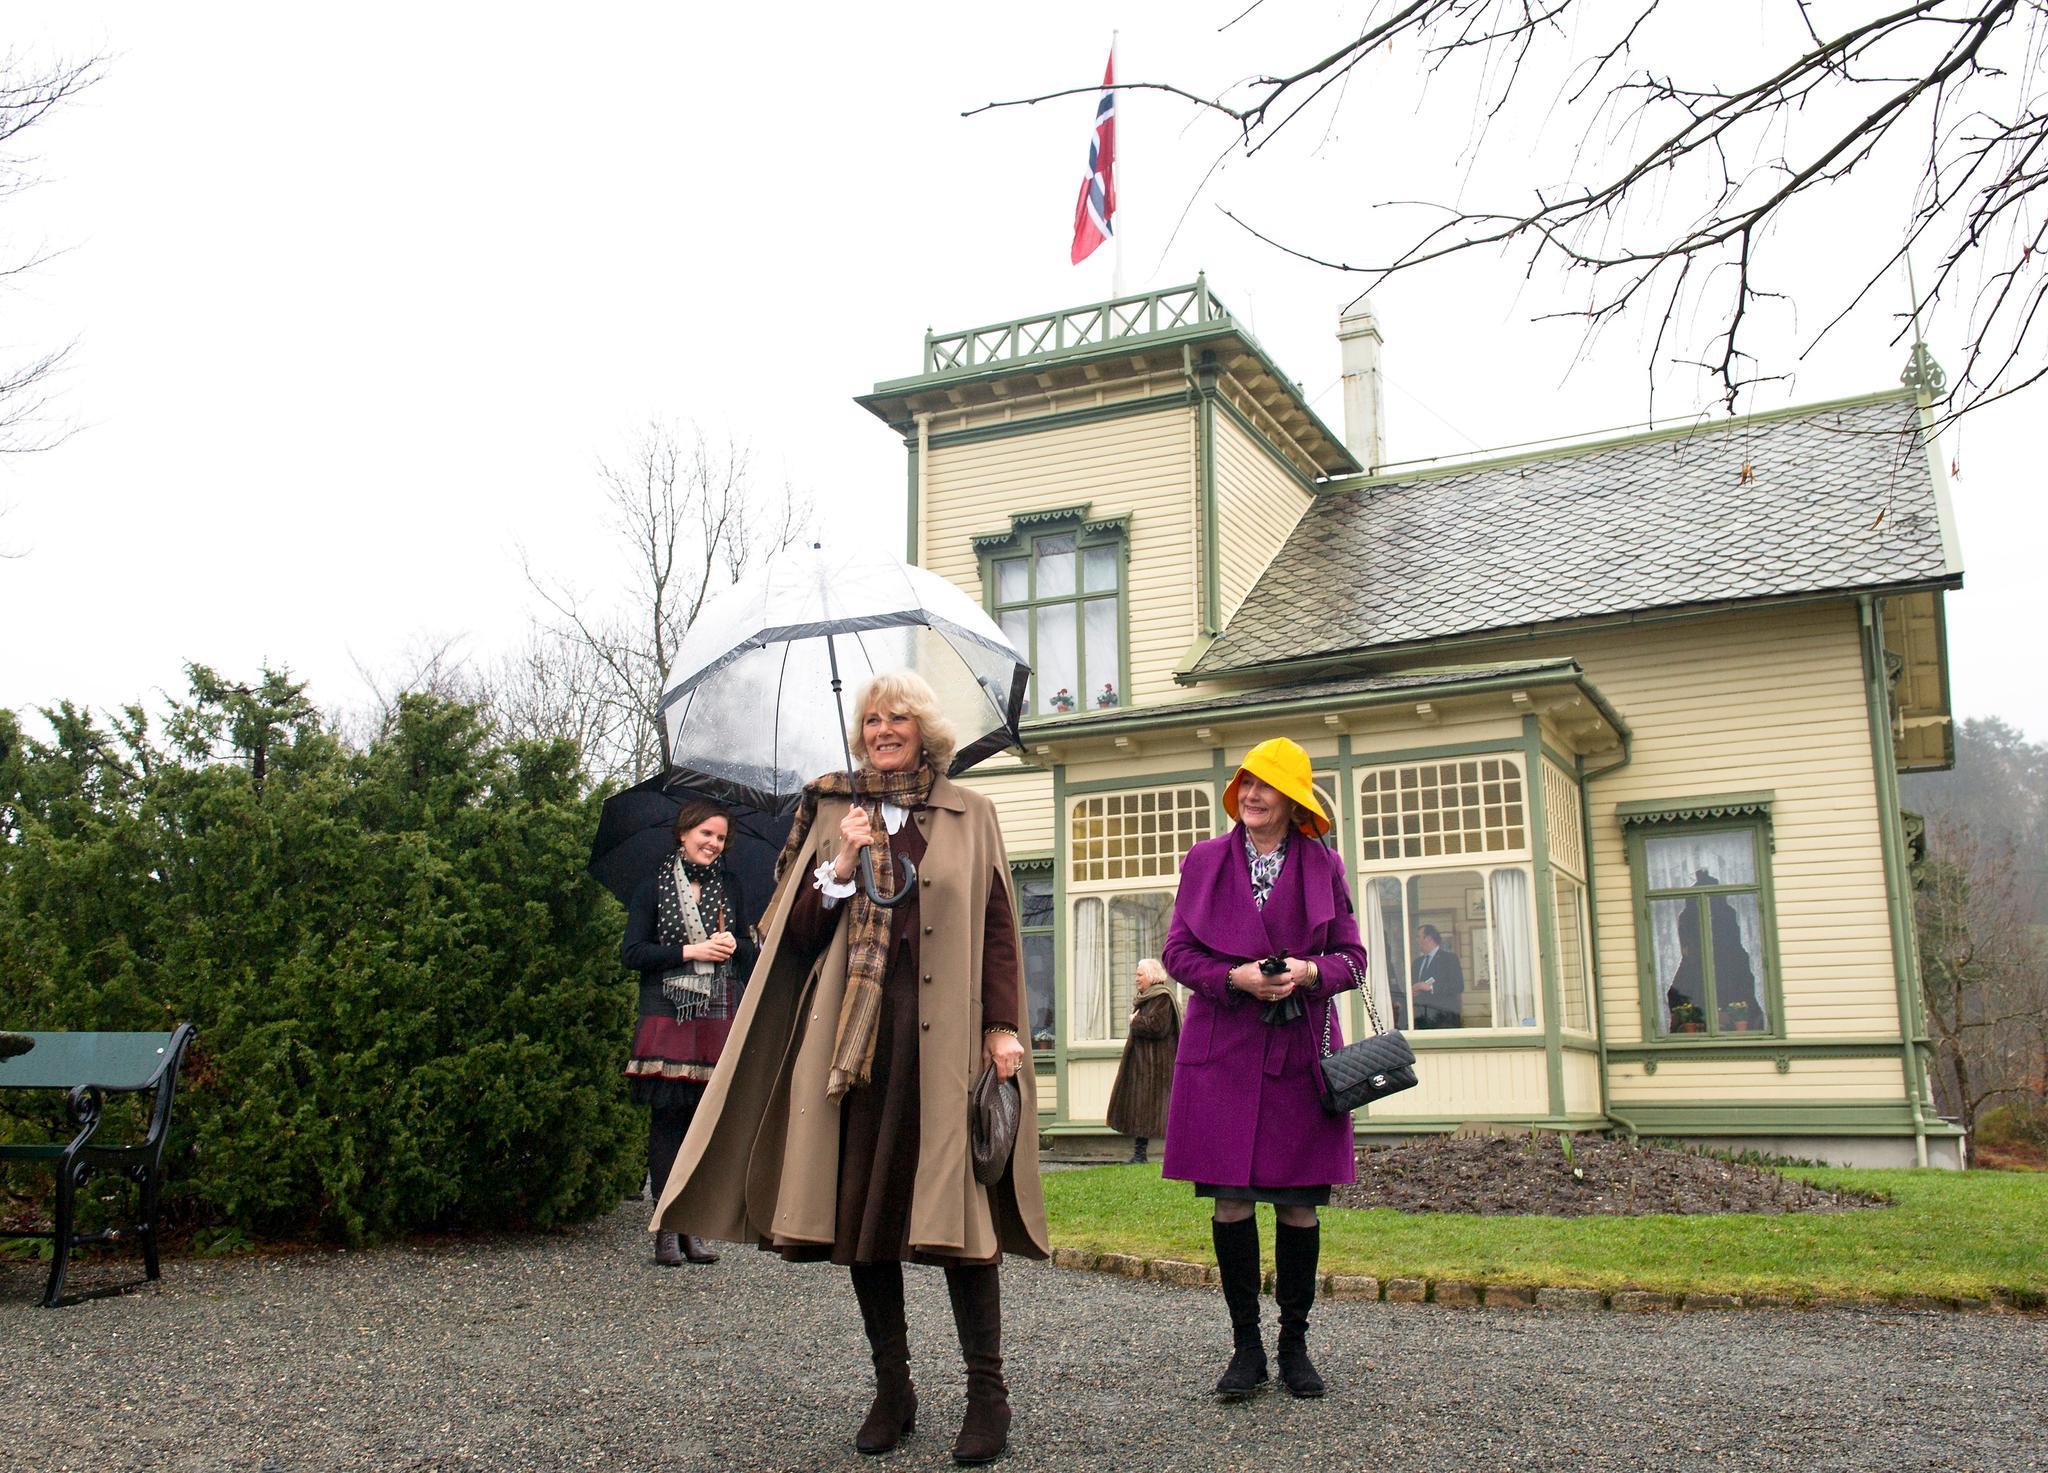 For KODE er eksempelvis inntektene fra konserter på Troldhaugen – Edvard og Nina Griegs hjem – i sommersesongen avgjørende for en god inntjening og drift, skriver Karin Hindsbo. Her er Camilla, hertuginnen av Cornwall, og dronning Sonja på besøk til Troldhaugen i 2012.